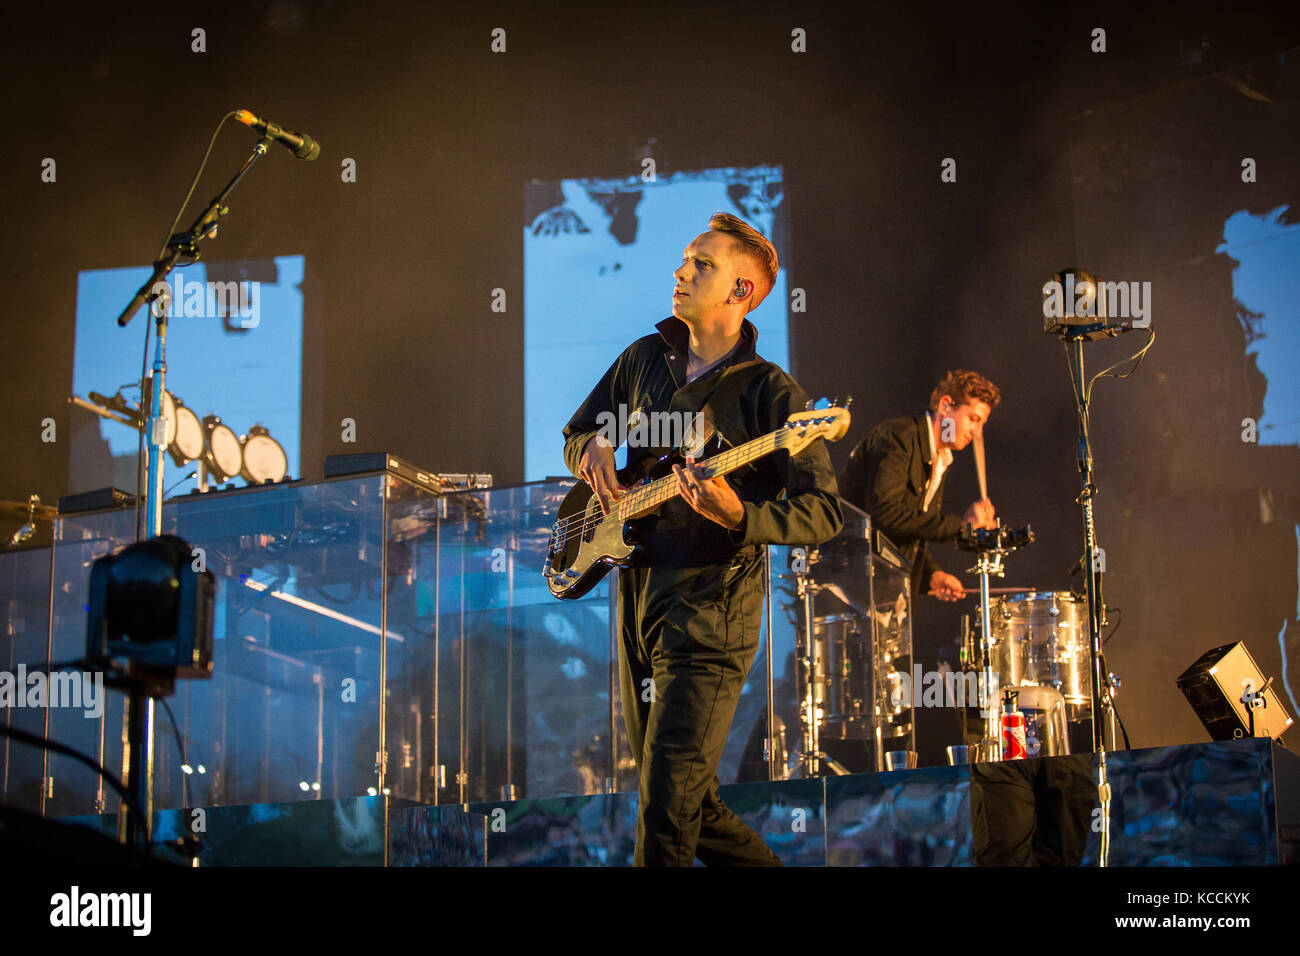 Norvegia, Oslo – 10 agosto 2017. La band indie elettronica inglese The xx esegue un concerto dal vivo durante il festival musicale norvegese Øyafestivalen 2017 a Oslo. Qui il bassista Oliver SIM è visto dal vivo sul palco. Foto Stock